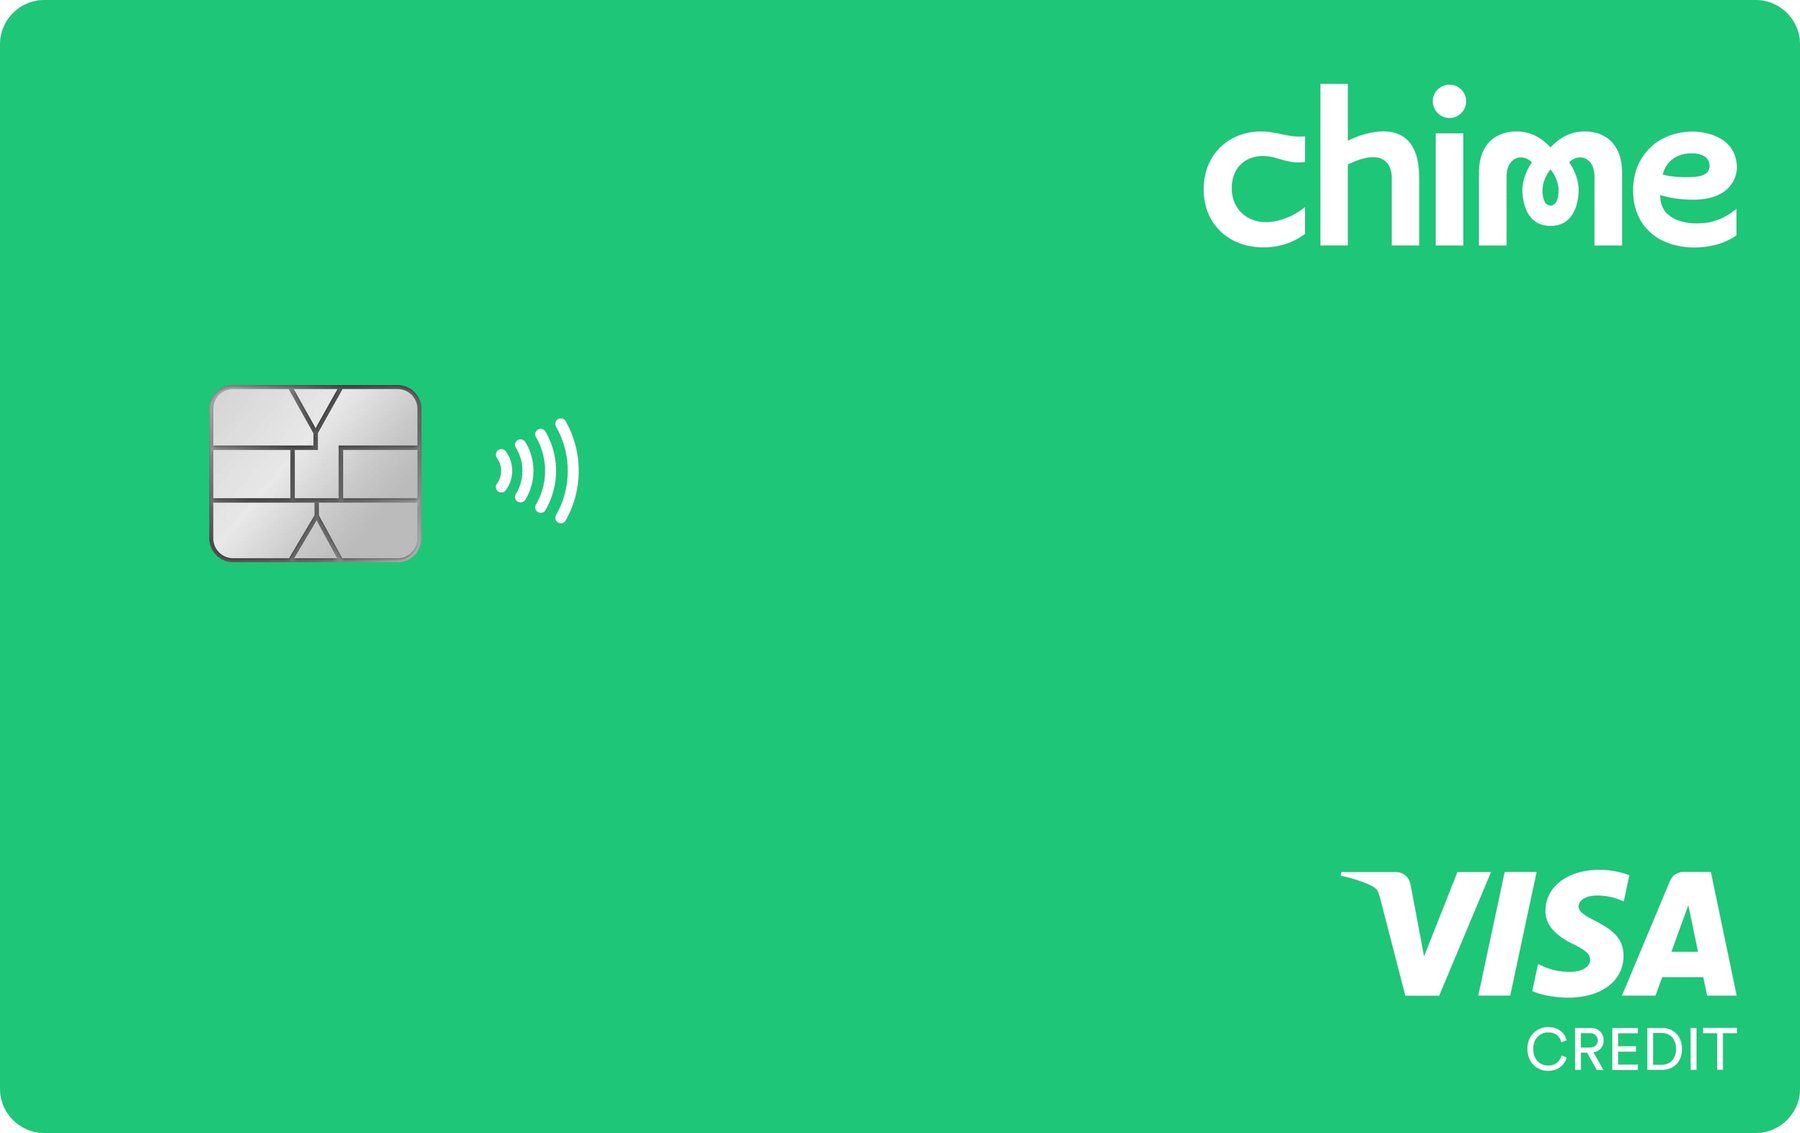 Chime Credit Builder Visa® Credit Card